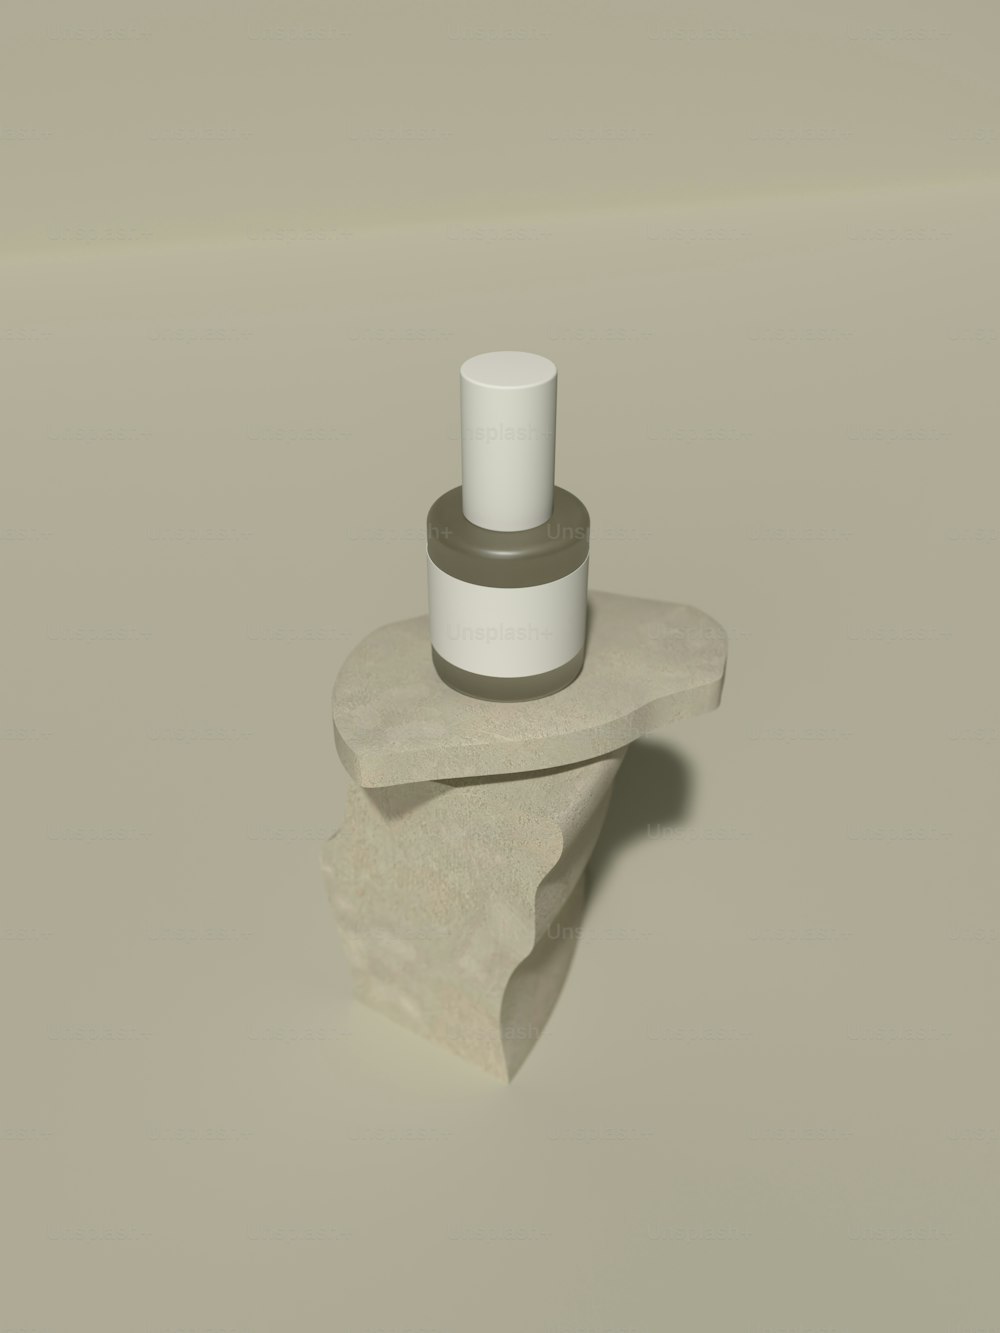 Un objeto cilíndrico blanco con un objeto blanco sobre una superficie blanca